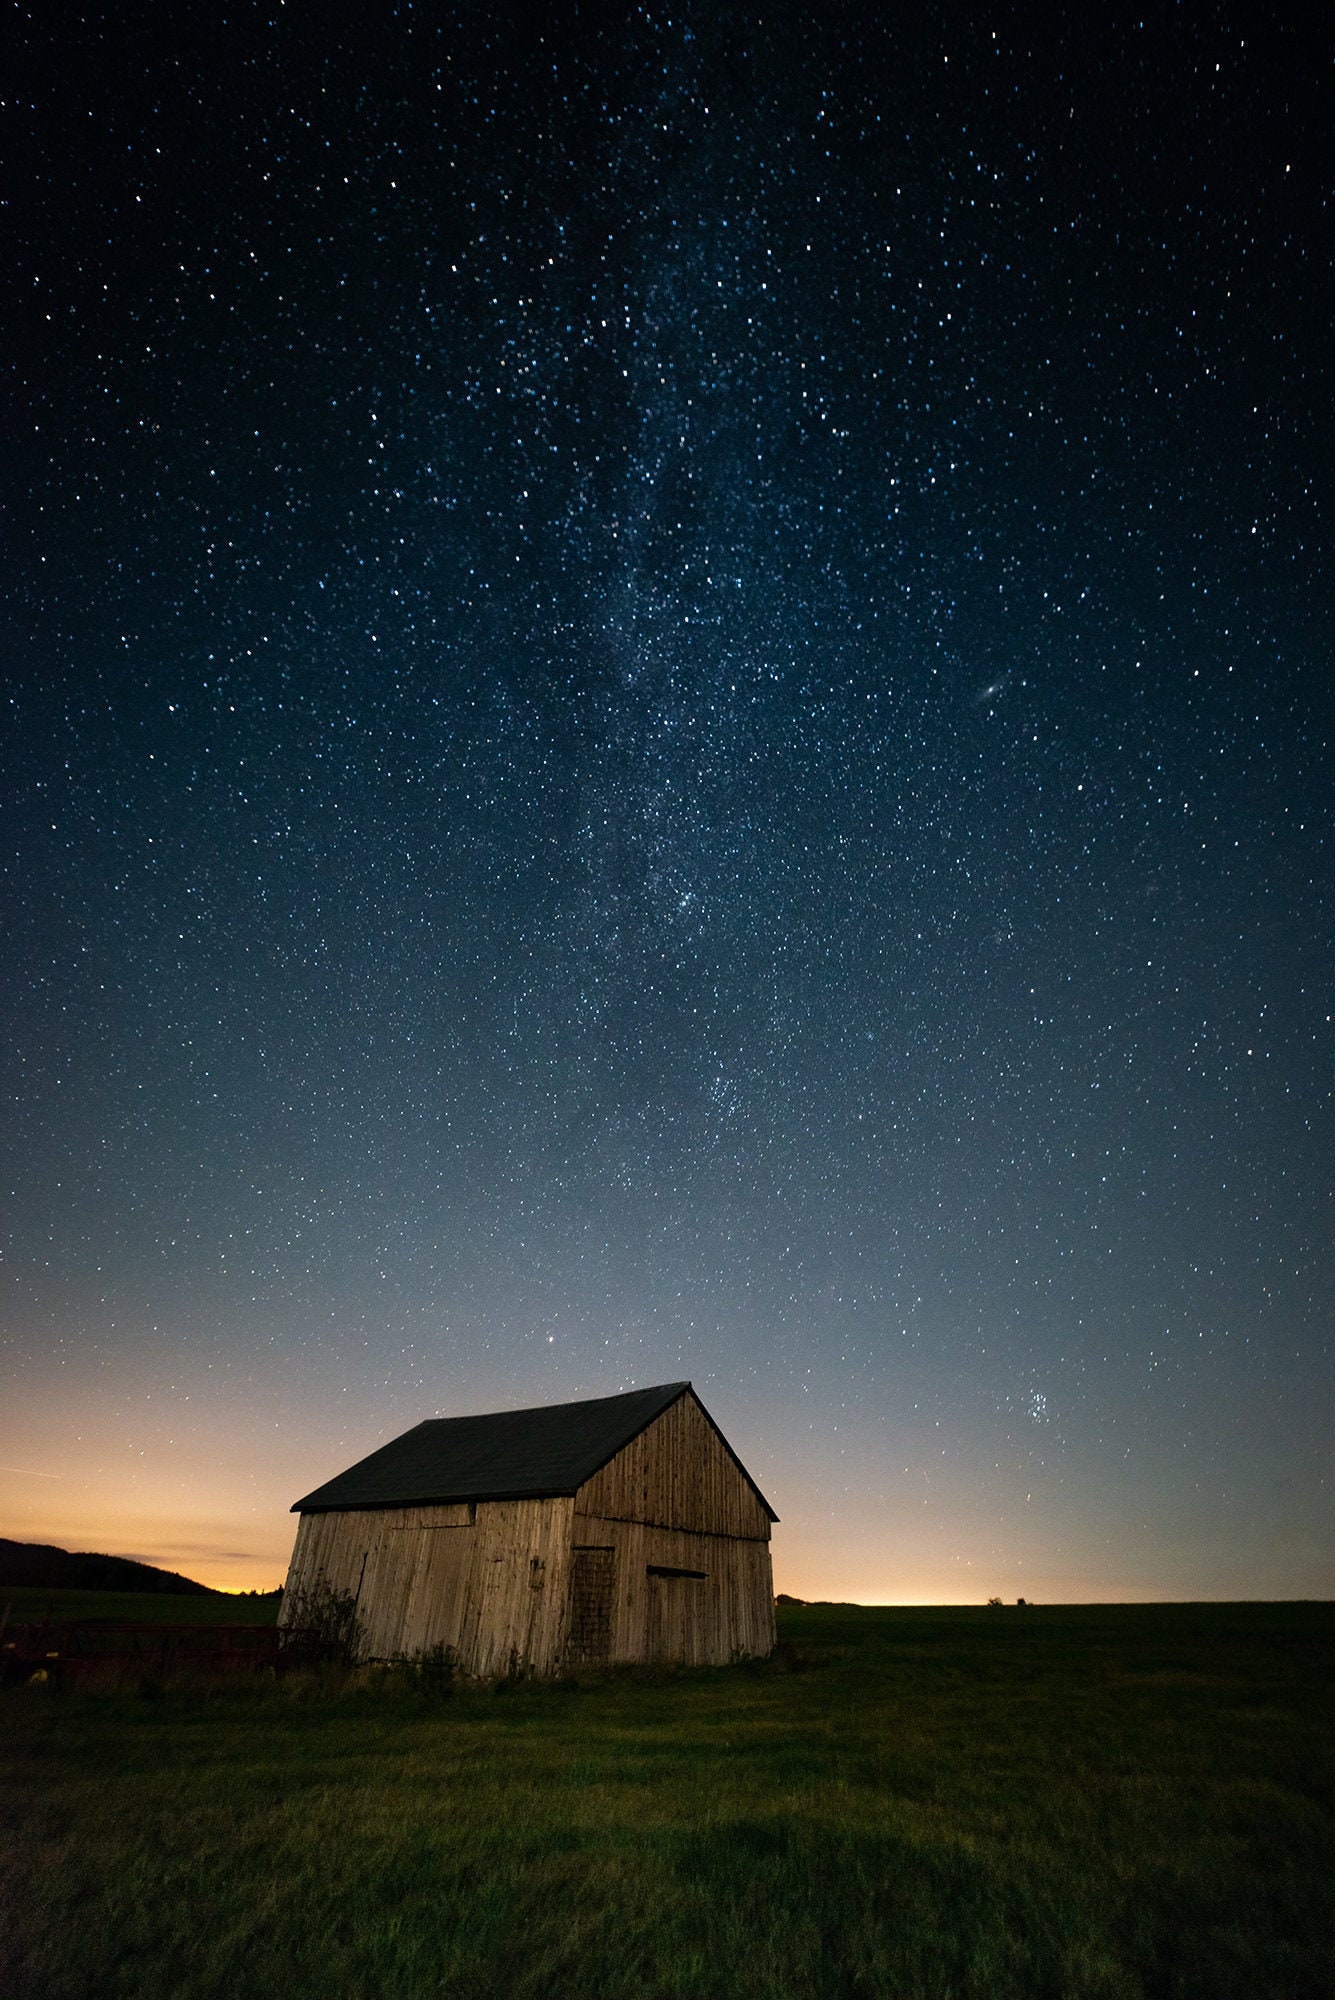 Milky Way and Barn Adirondacks, NY - Etsy